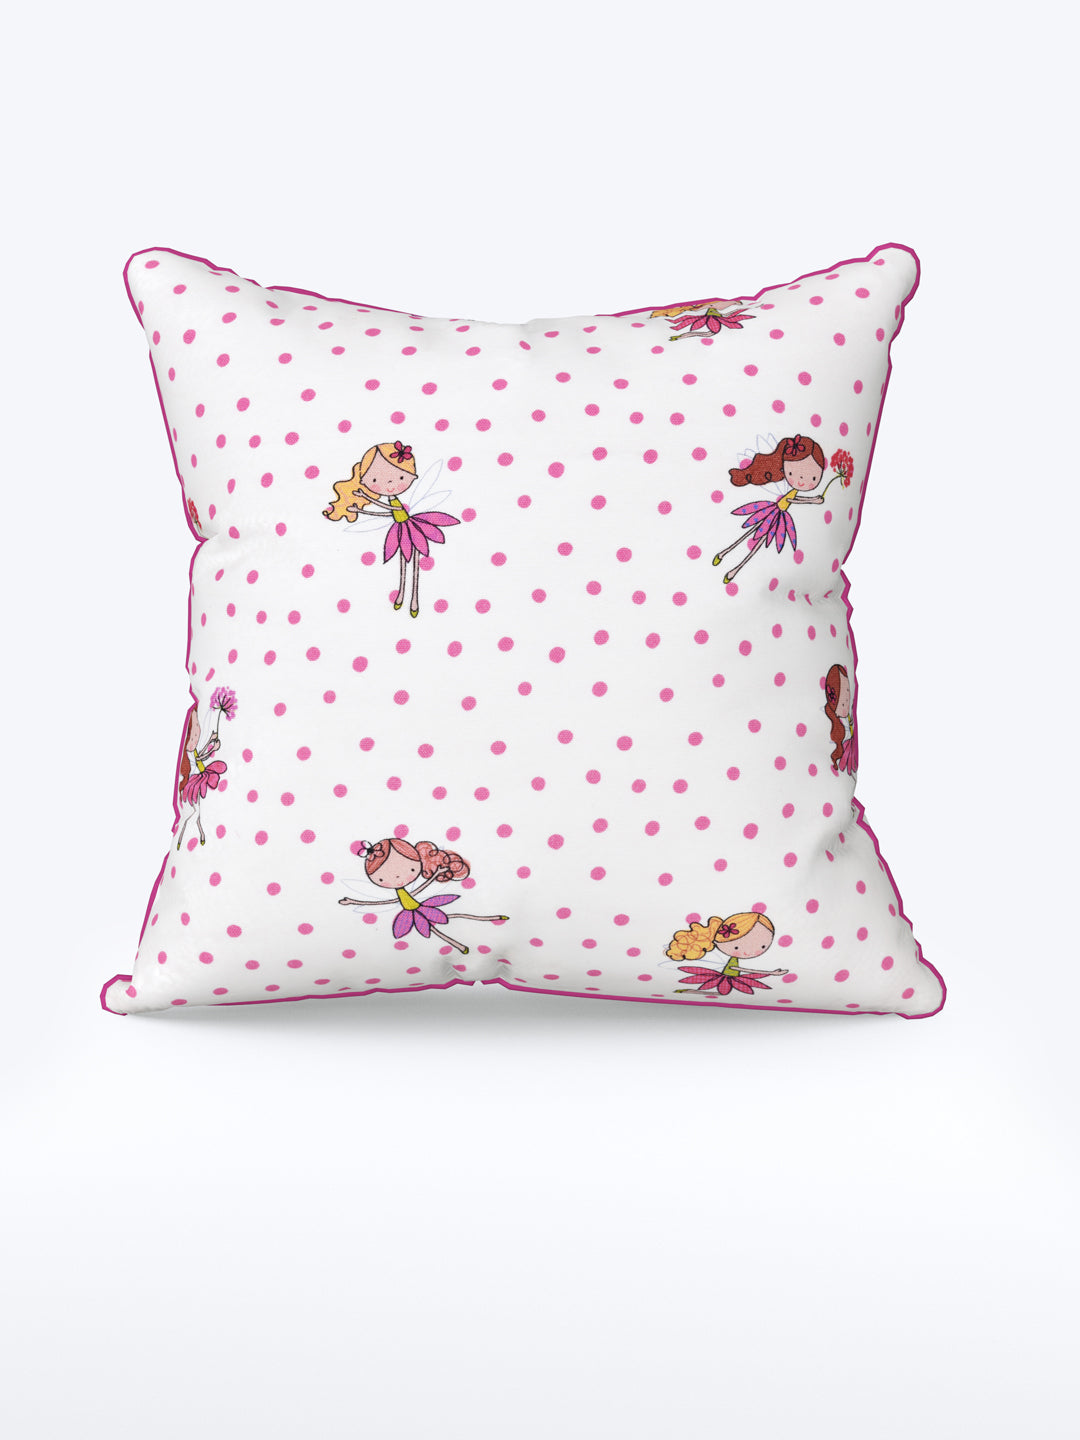 Cushion Cover Set Of 5; Pink Polka Dots